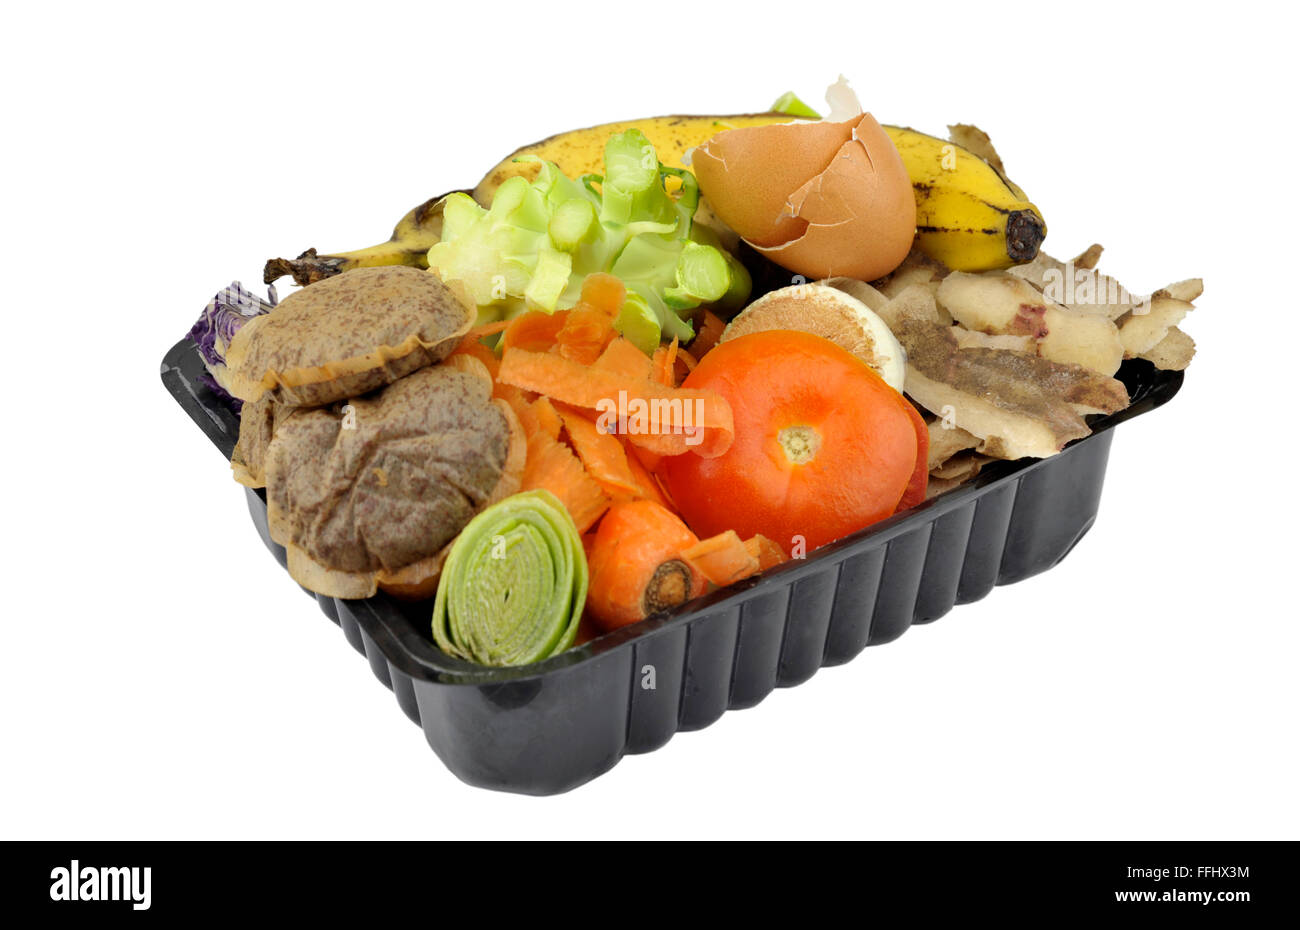 Vegetali, frutta cucina domestici rifiuti alimentari, raccolti in ri-imballaggi usati per compostaggio domestico o aggiunta di worm bin. Foto Stock